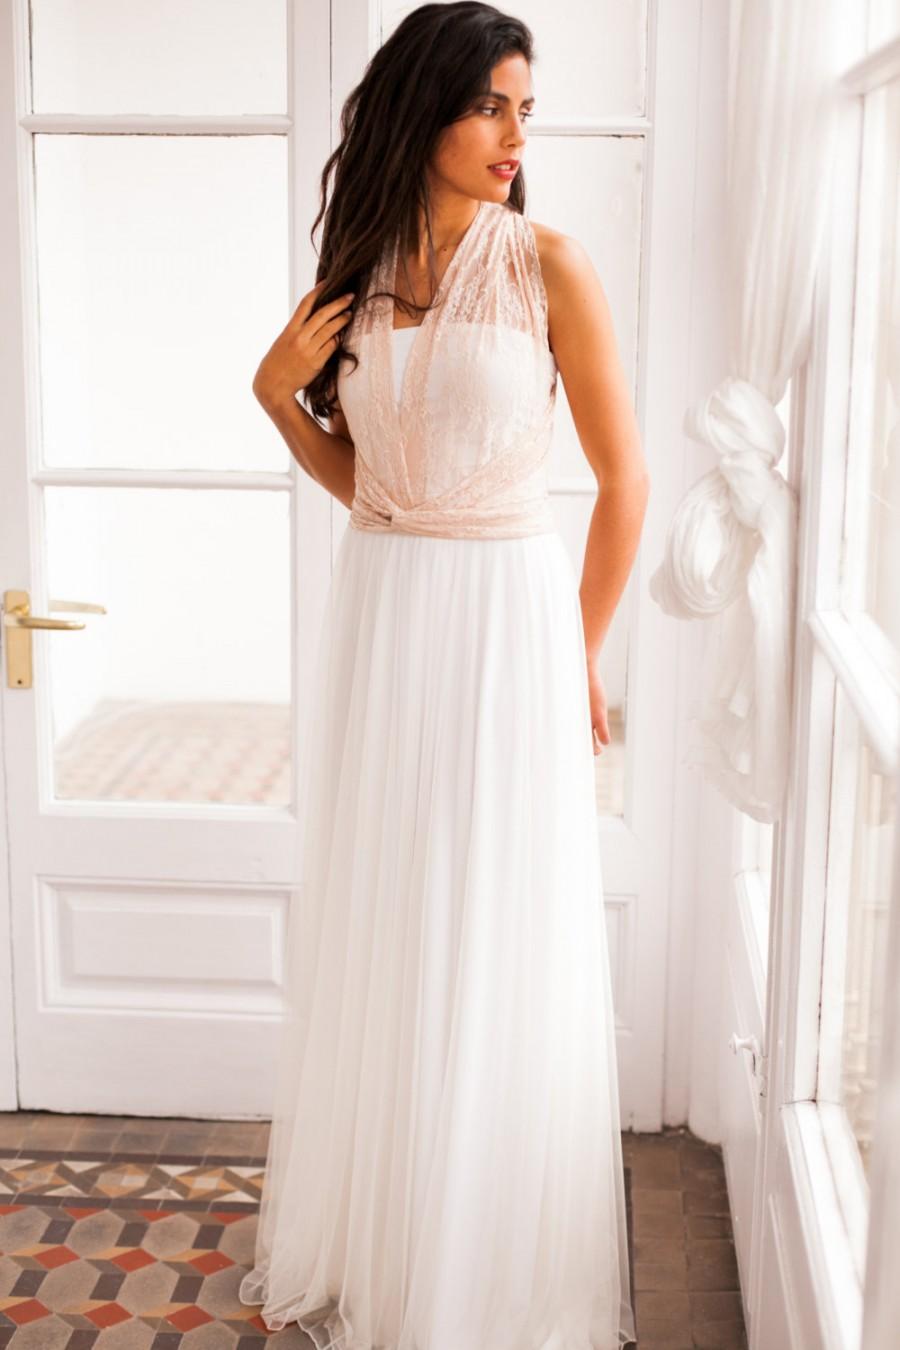 زفاف - Lace wedding dress with tulle skirt, lace and tulle wedding dress, rose gold wedding dress, bohemian lace wedding dress, tulle wedding dress